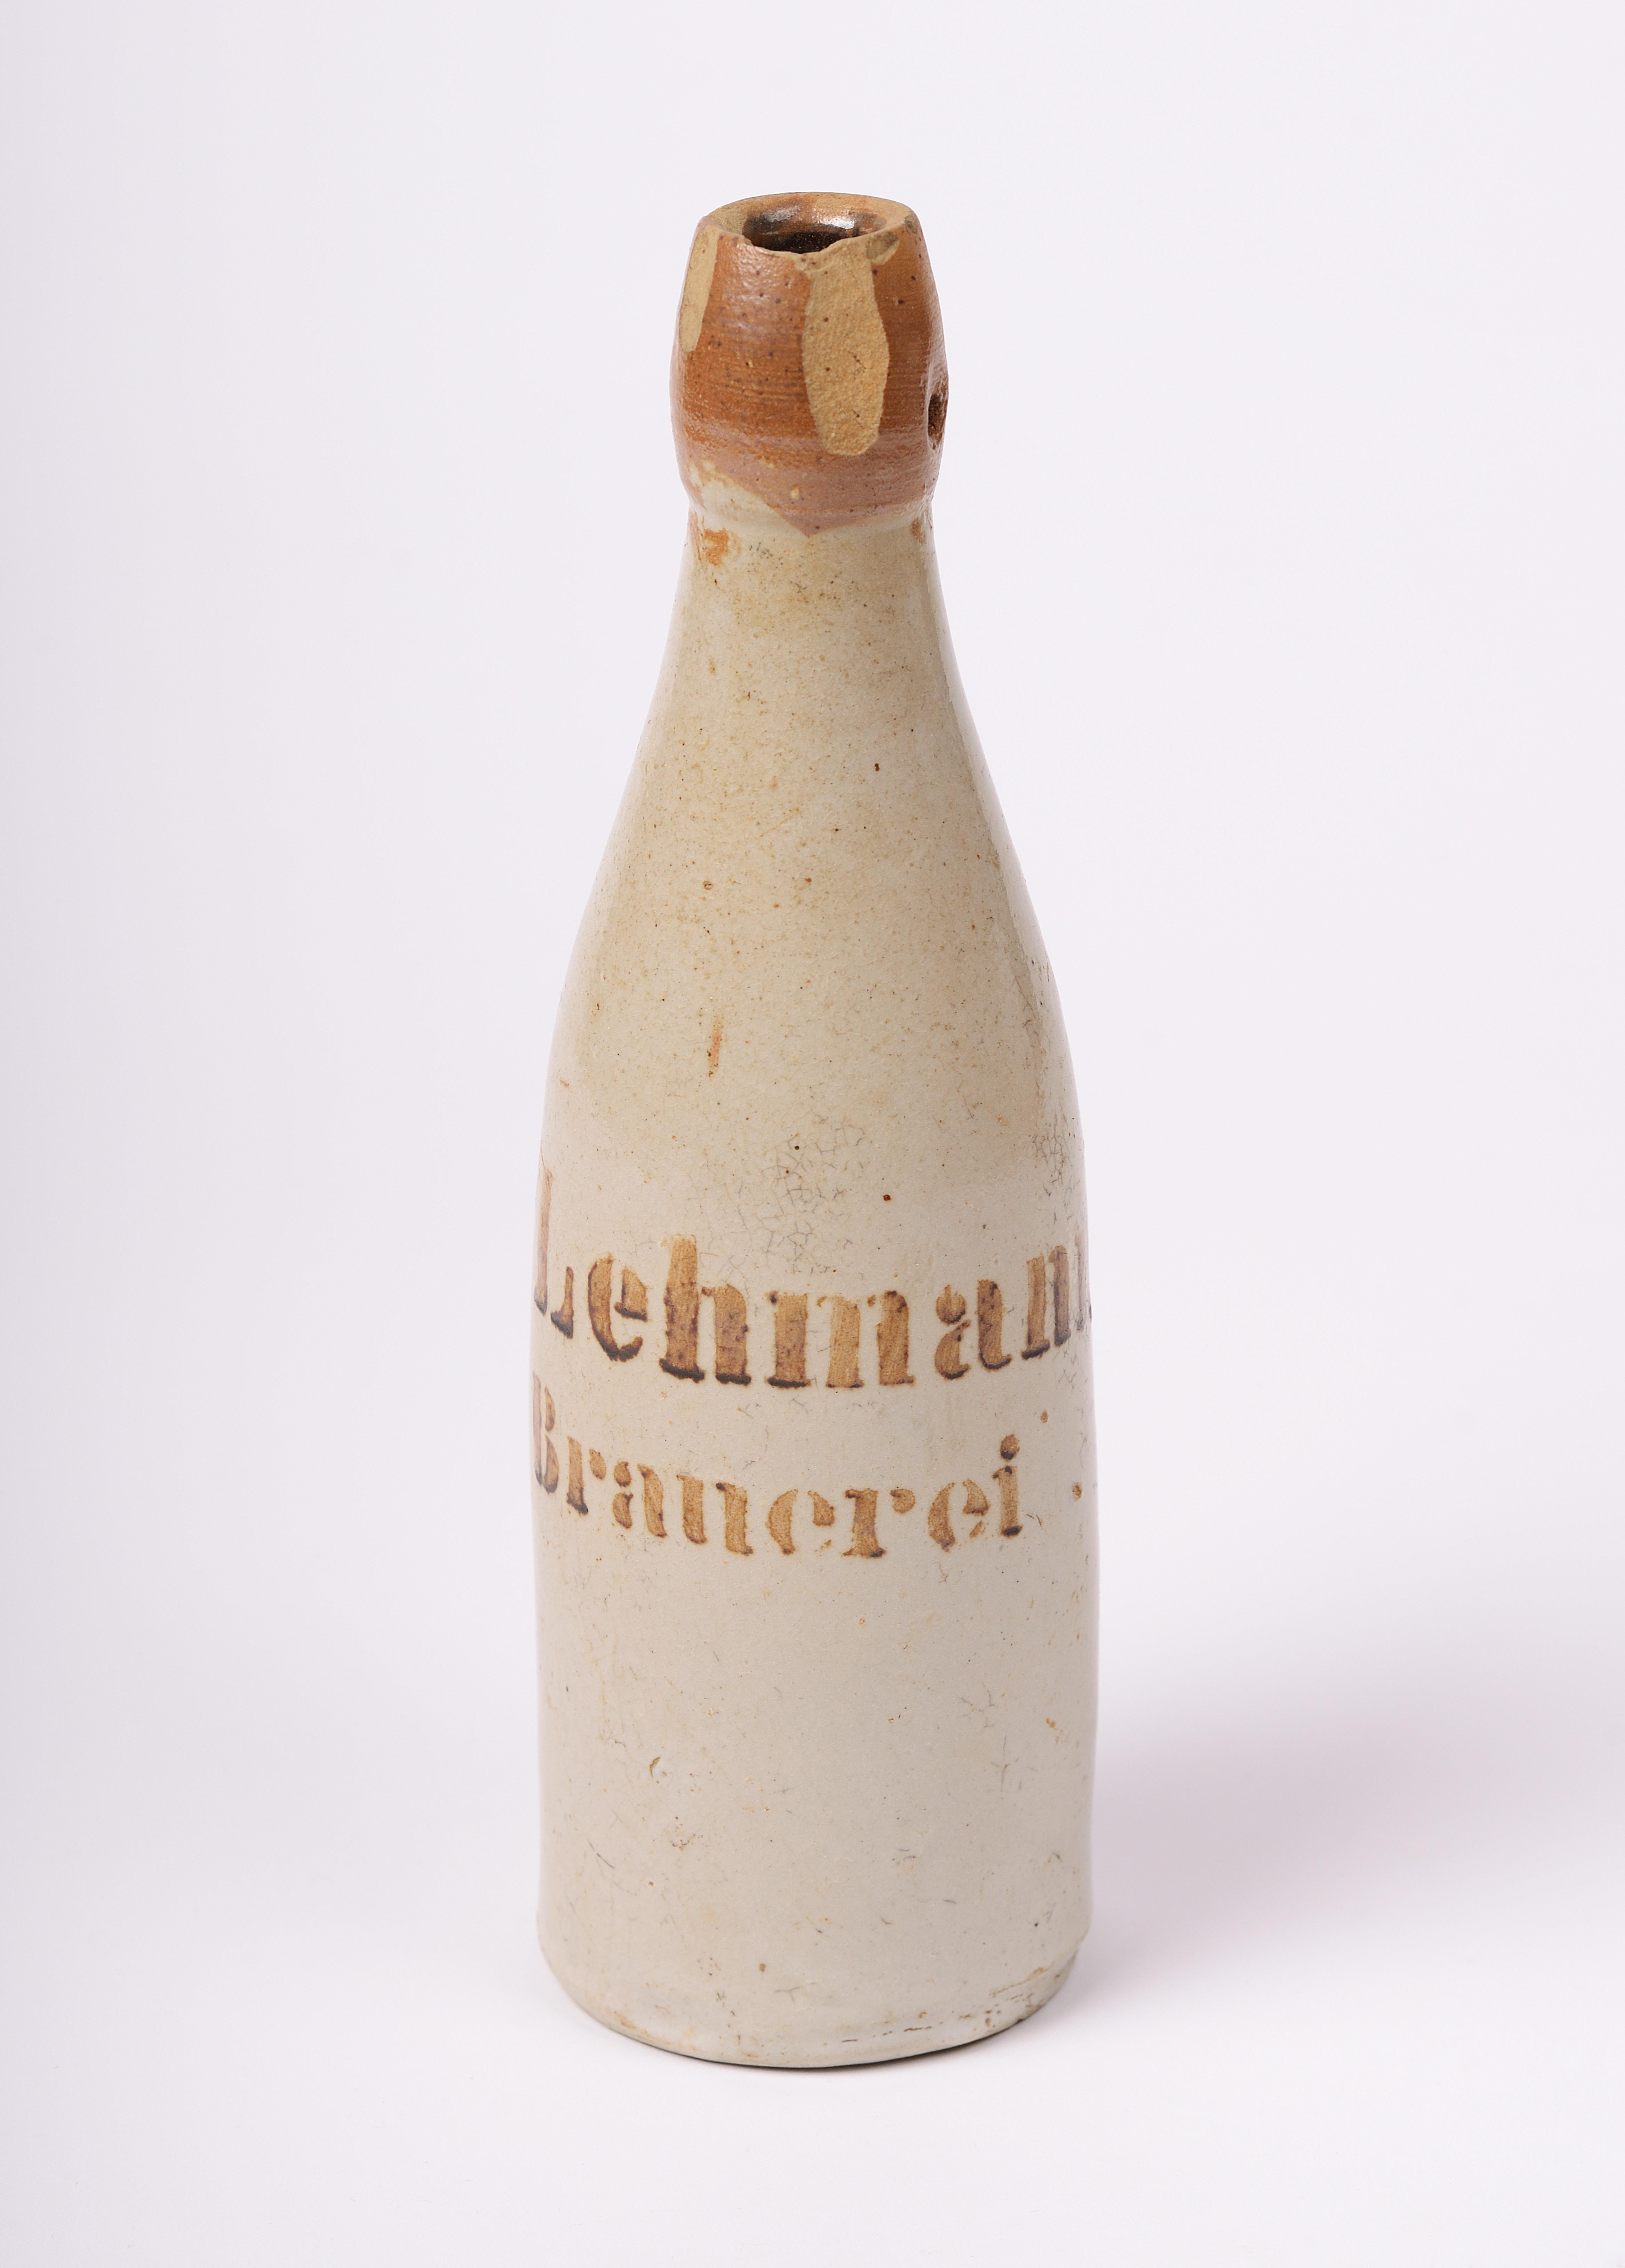 Tönerne Bierflasche der Brauerei Lehmann in Lübben, um 1900 (Museumsverbund Landkreis Dahme-Spreewald CC BY-NC-SA)